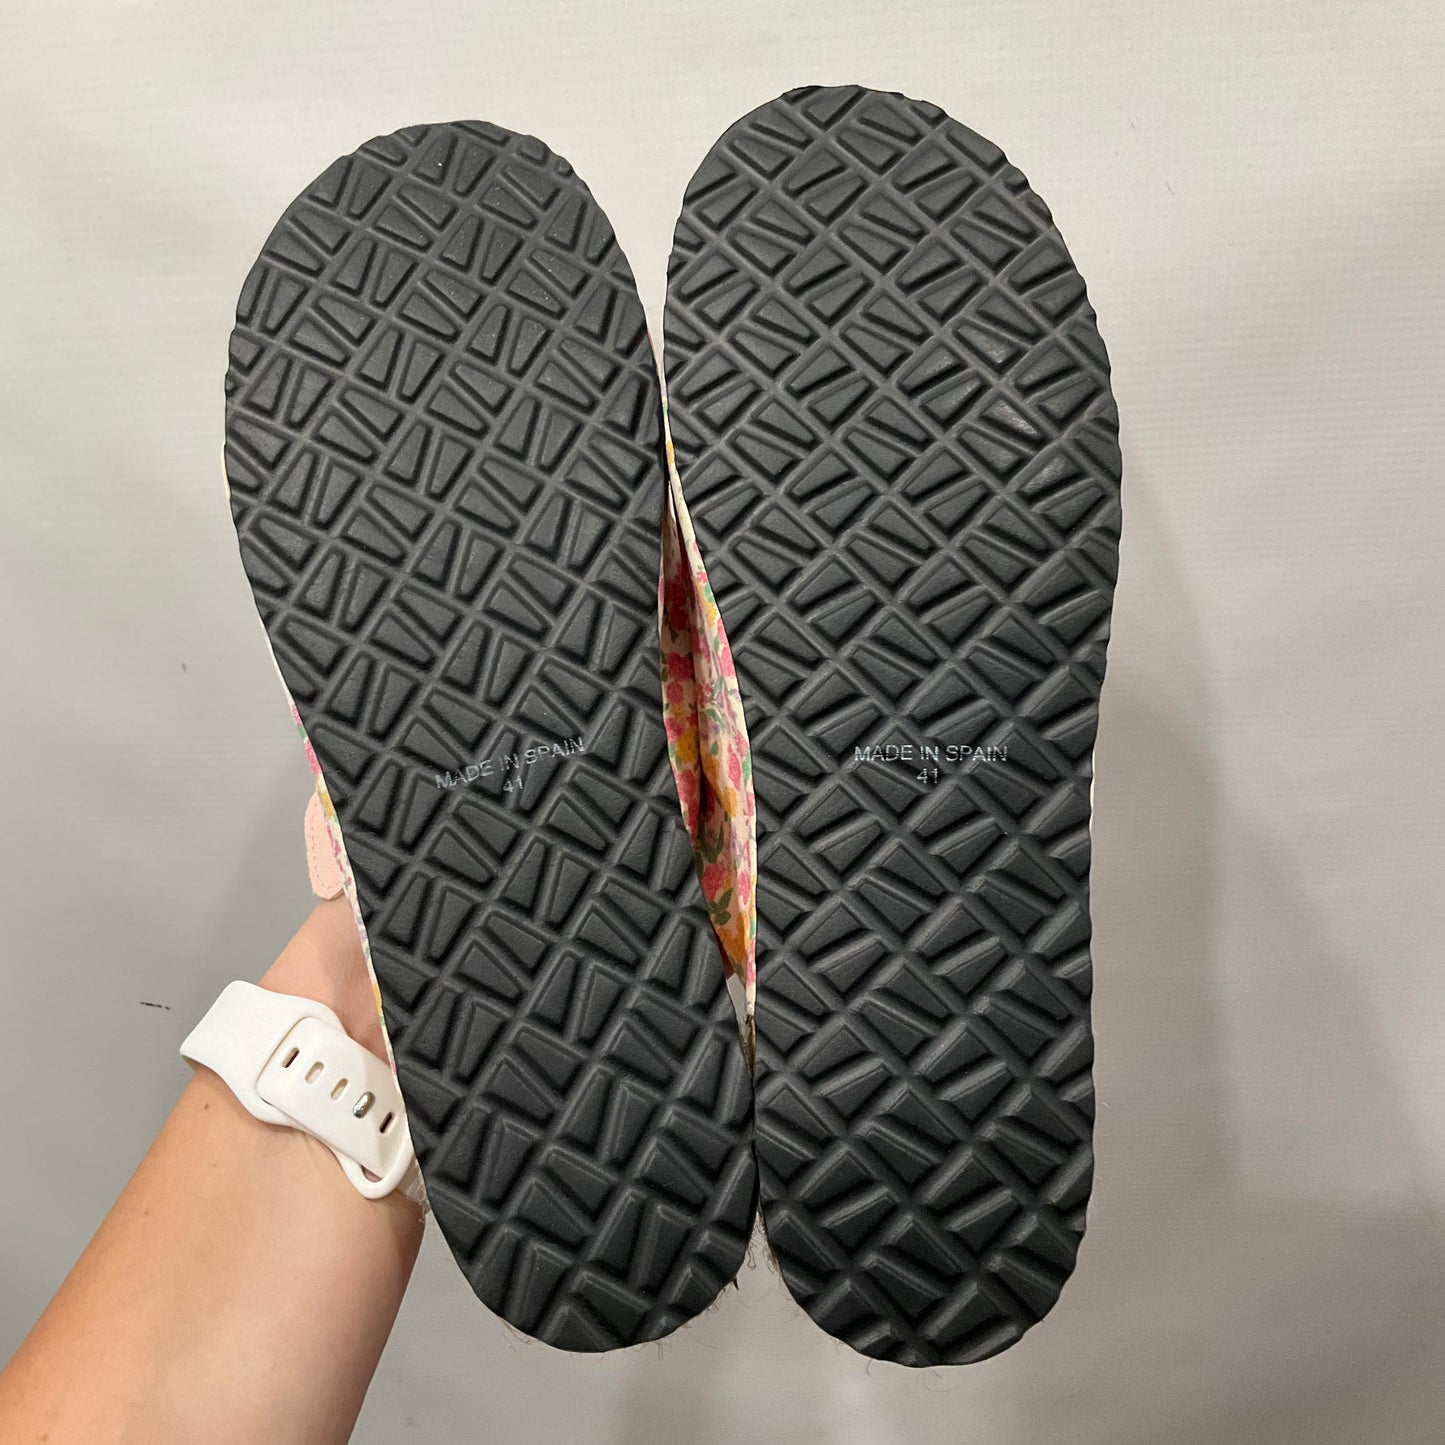 Pink Sandals Designer Love Shack Fancy, Size 10